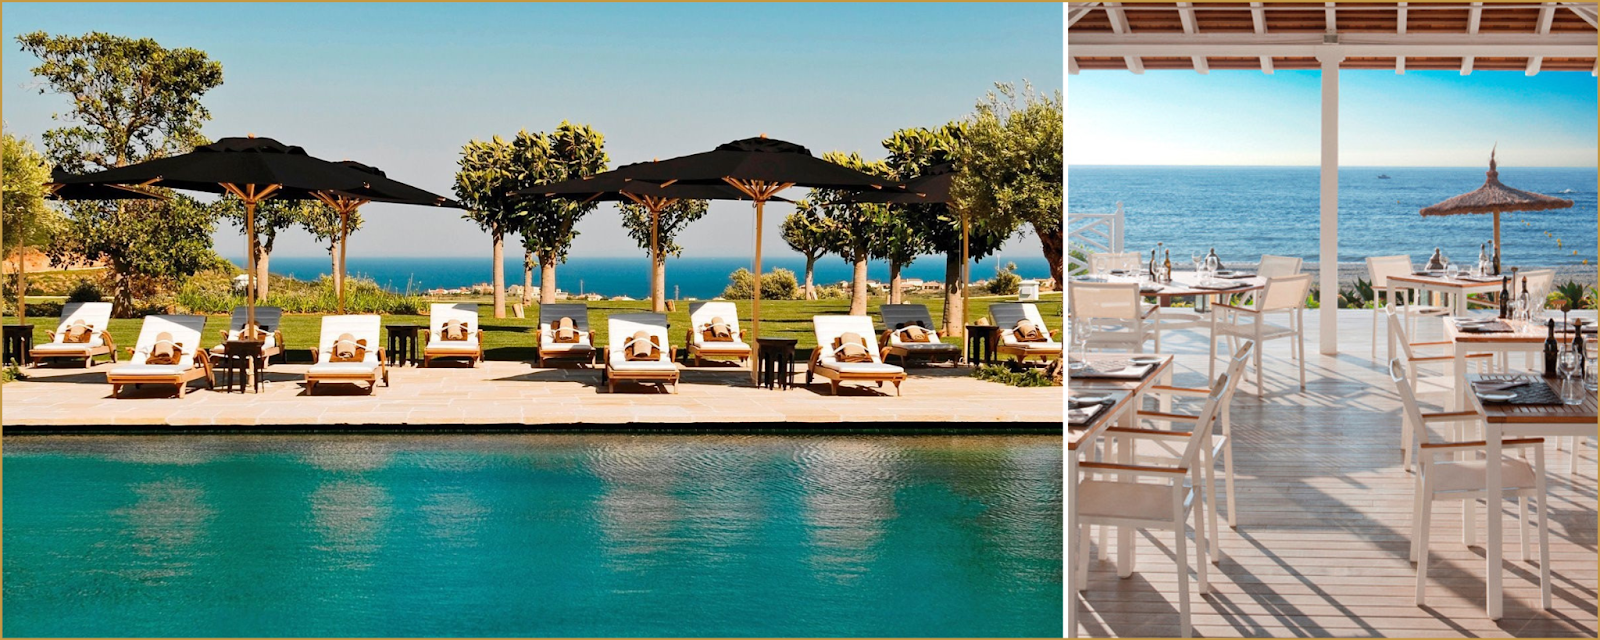 Finca Cortesin Resort club de playa Hansson Hertzell inmobiliaria en Casares Costa del Sol